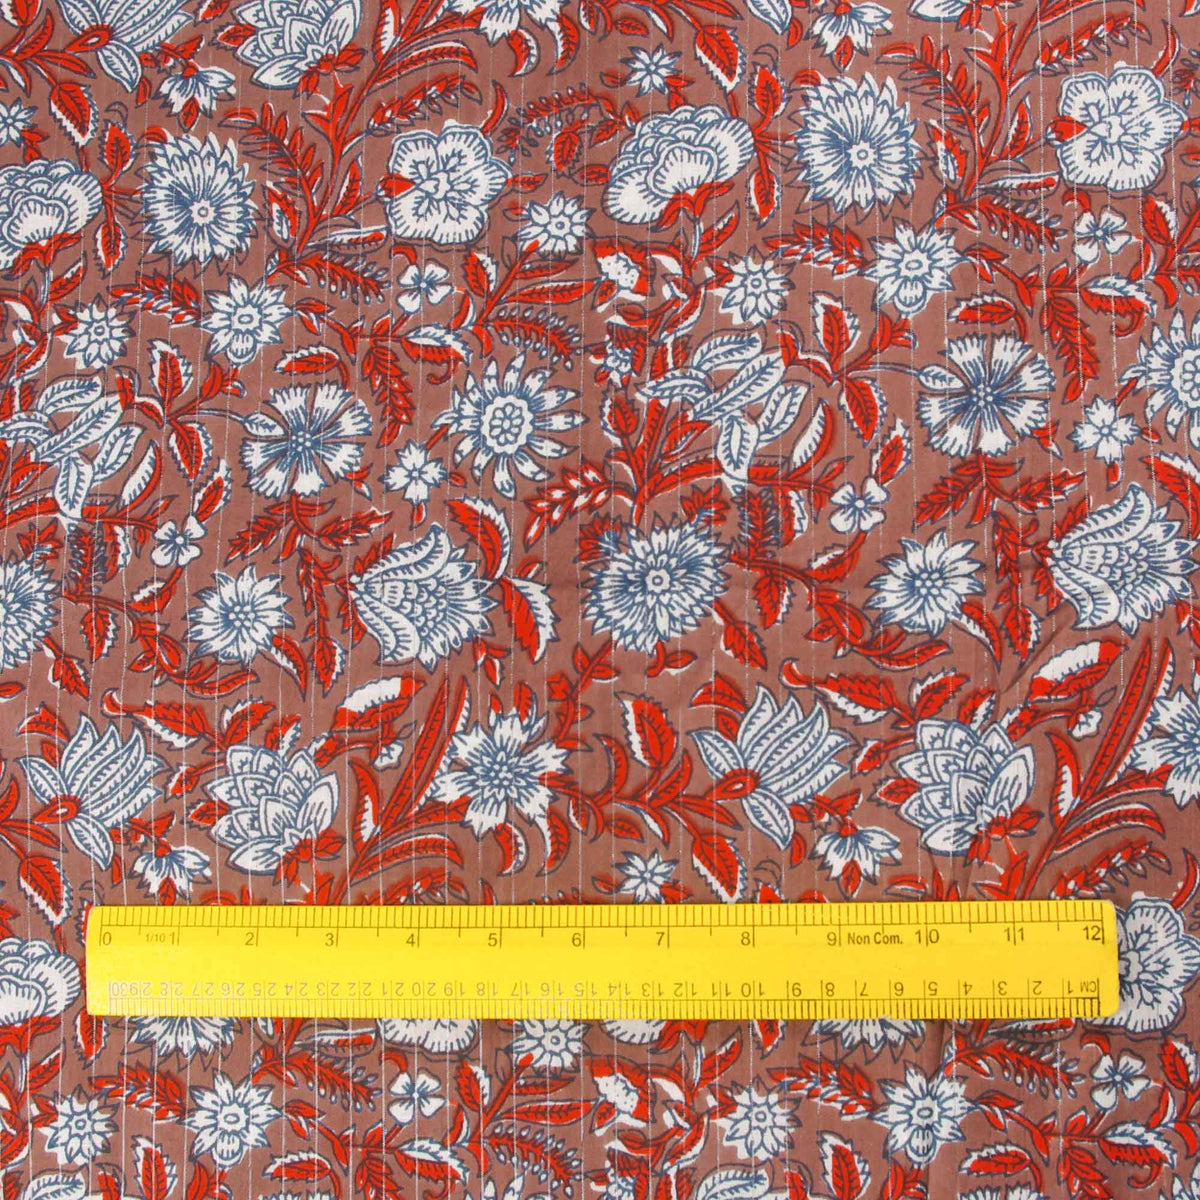 Handsiebbedruckter Stoff aus 100 % Baumwolle – rote Reben auf Braun mit silbernen Linien (Design 385)